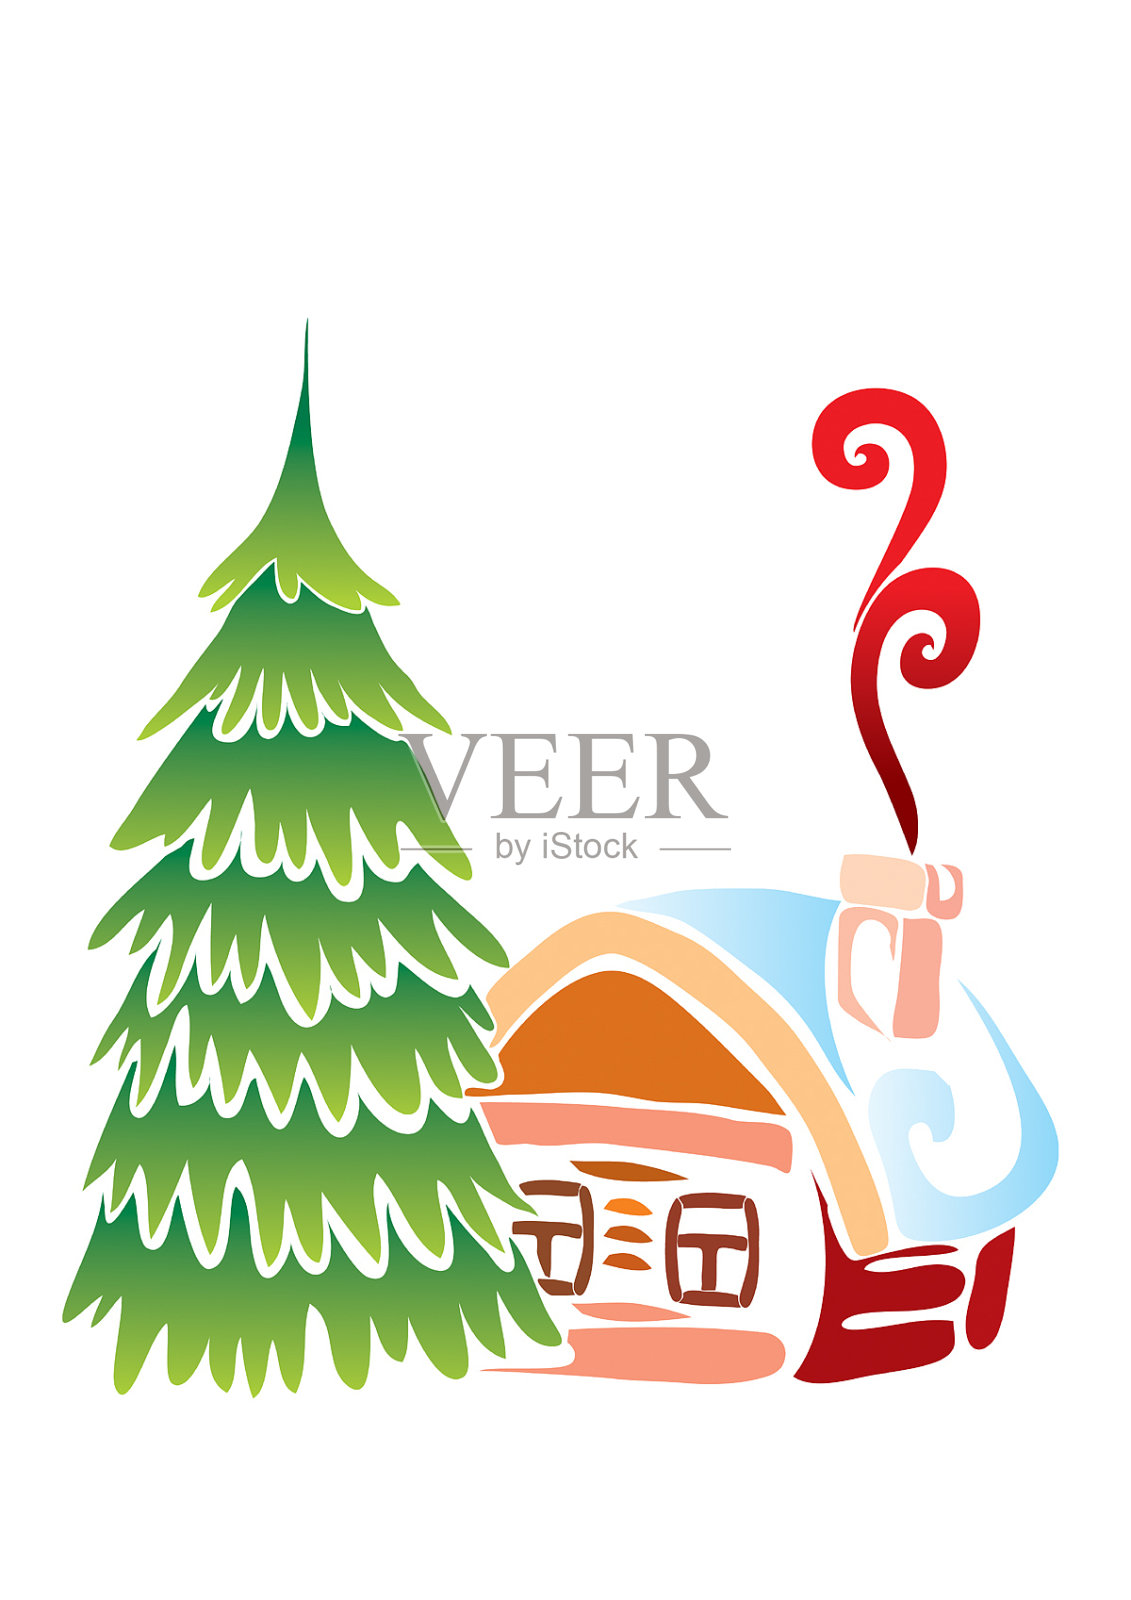 有一棵皮草树的圣诞小屋设计元素图片